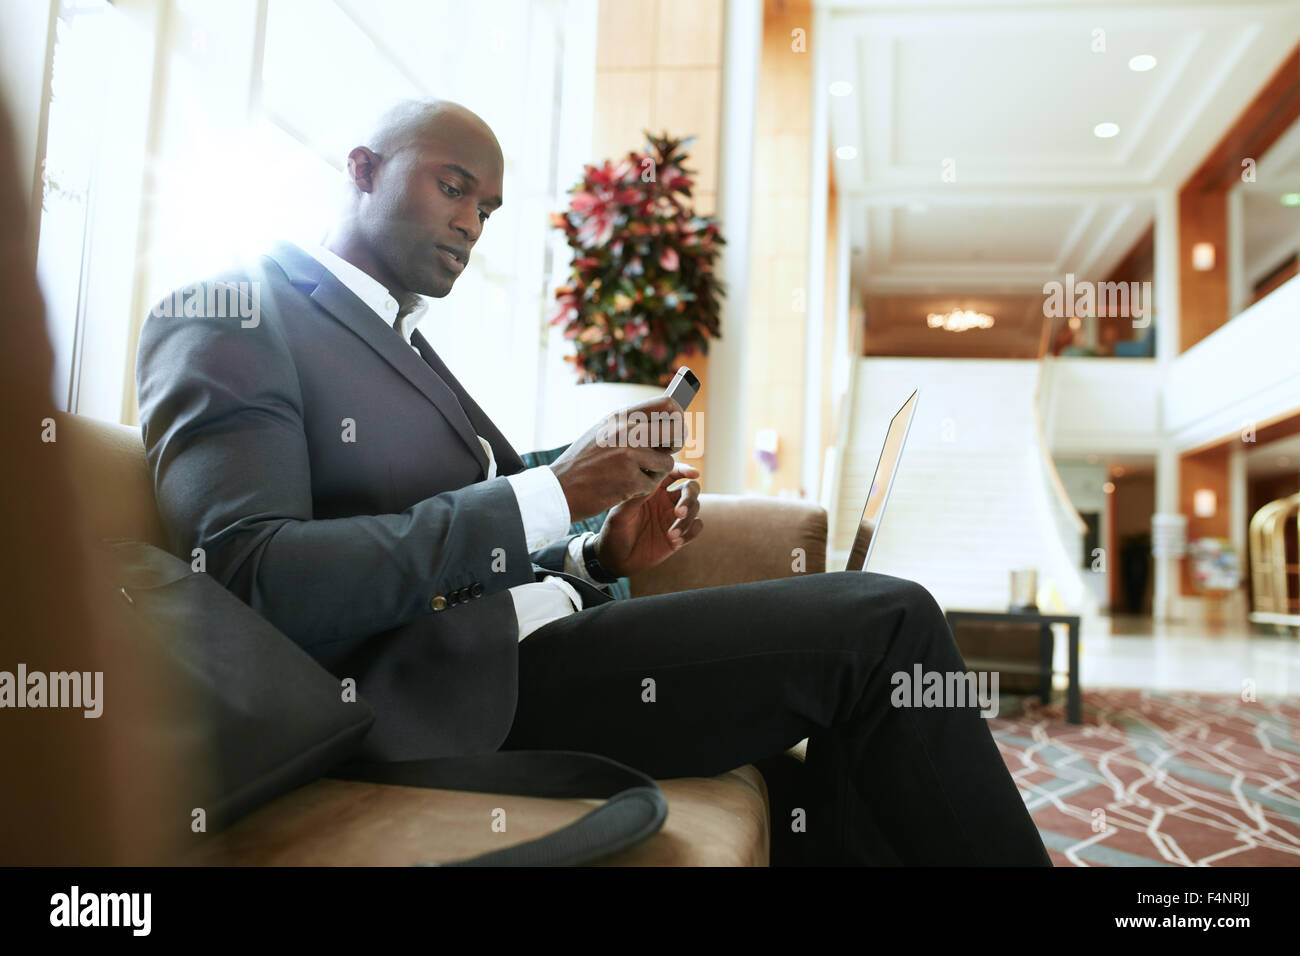 Männliche Führungskraft auf Sofa Blick auf sein Handy. Afrikanische Unternehmer warten in der Lobby des Hotels. Stockfoto